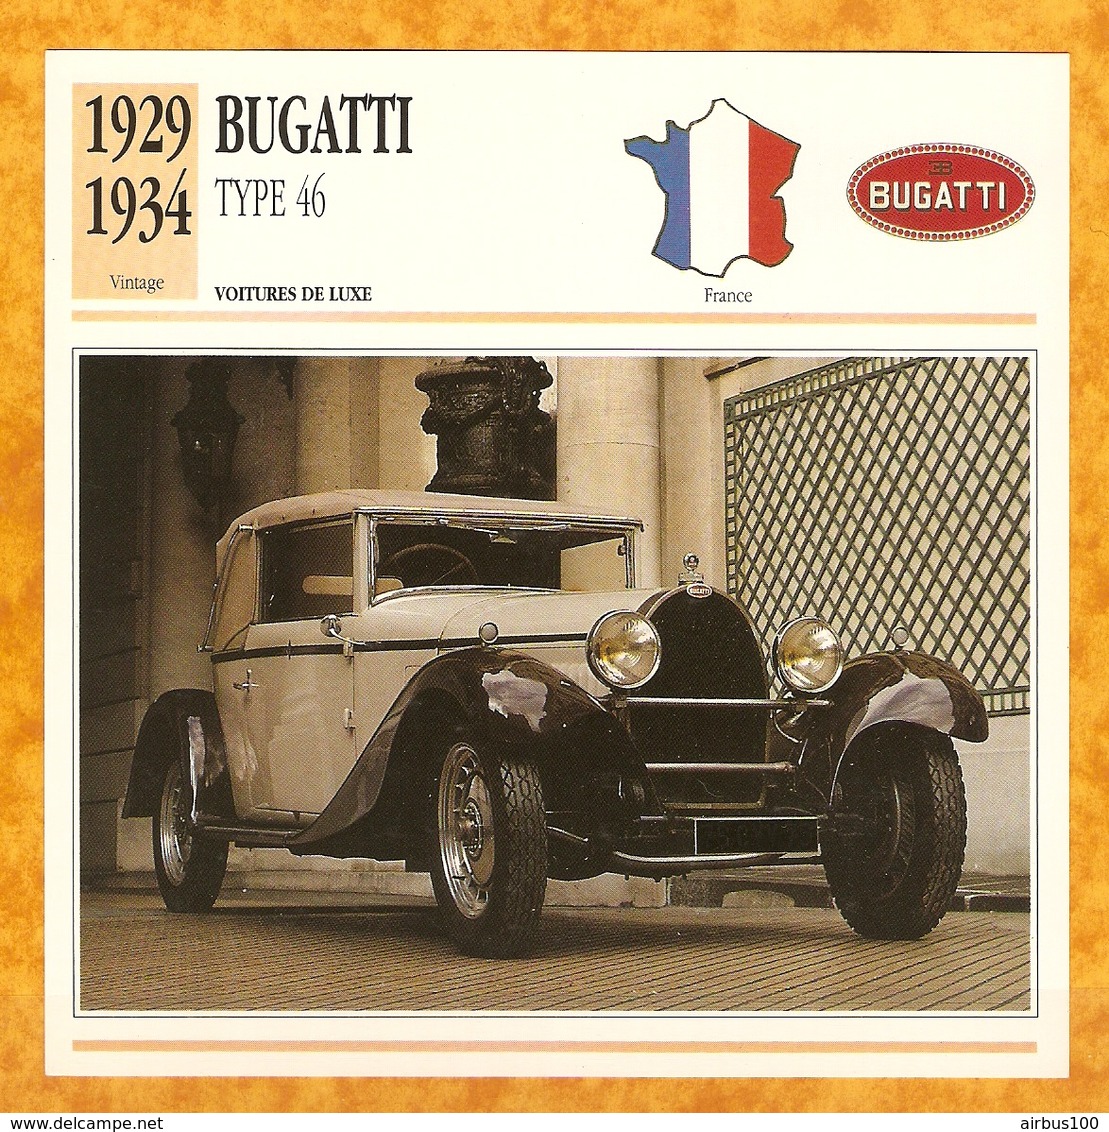 1929 FRANCE VIEILLE VOITURE BUGATTI TYPE 46 - FRANCE OLD CAR - FRANCIA VIEJO COCHE - VECCHIA MACCHINA - Automobili